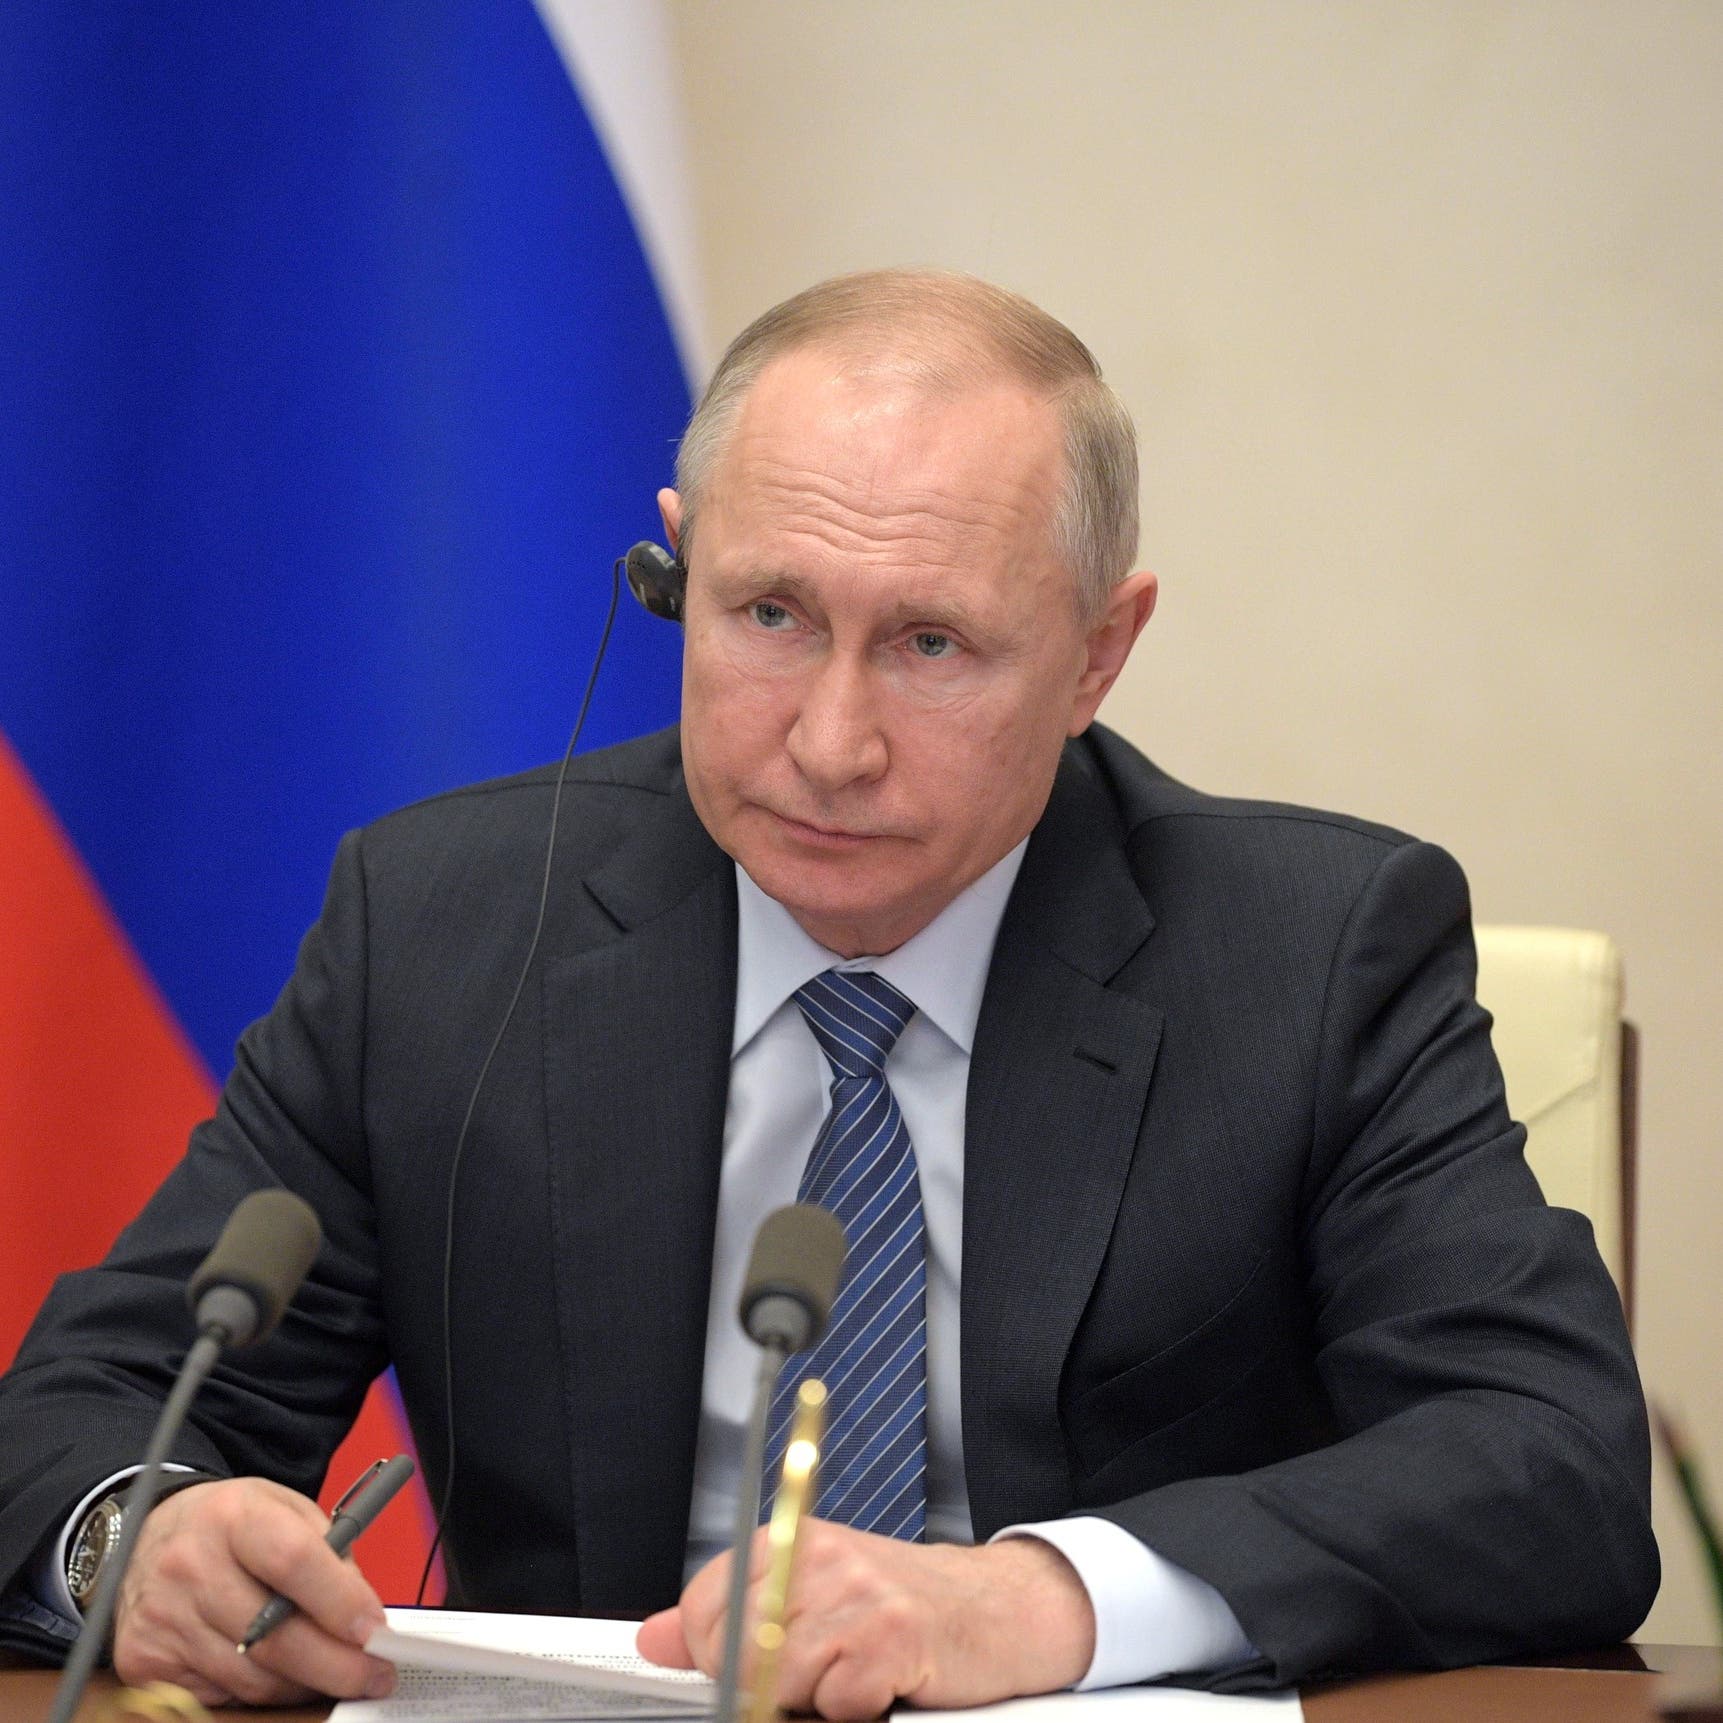 معركة المعارضة الروسية الصعبة بوجه تعديلات بوتين الدستورية